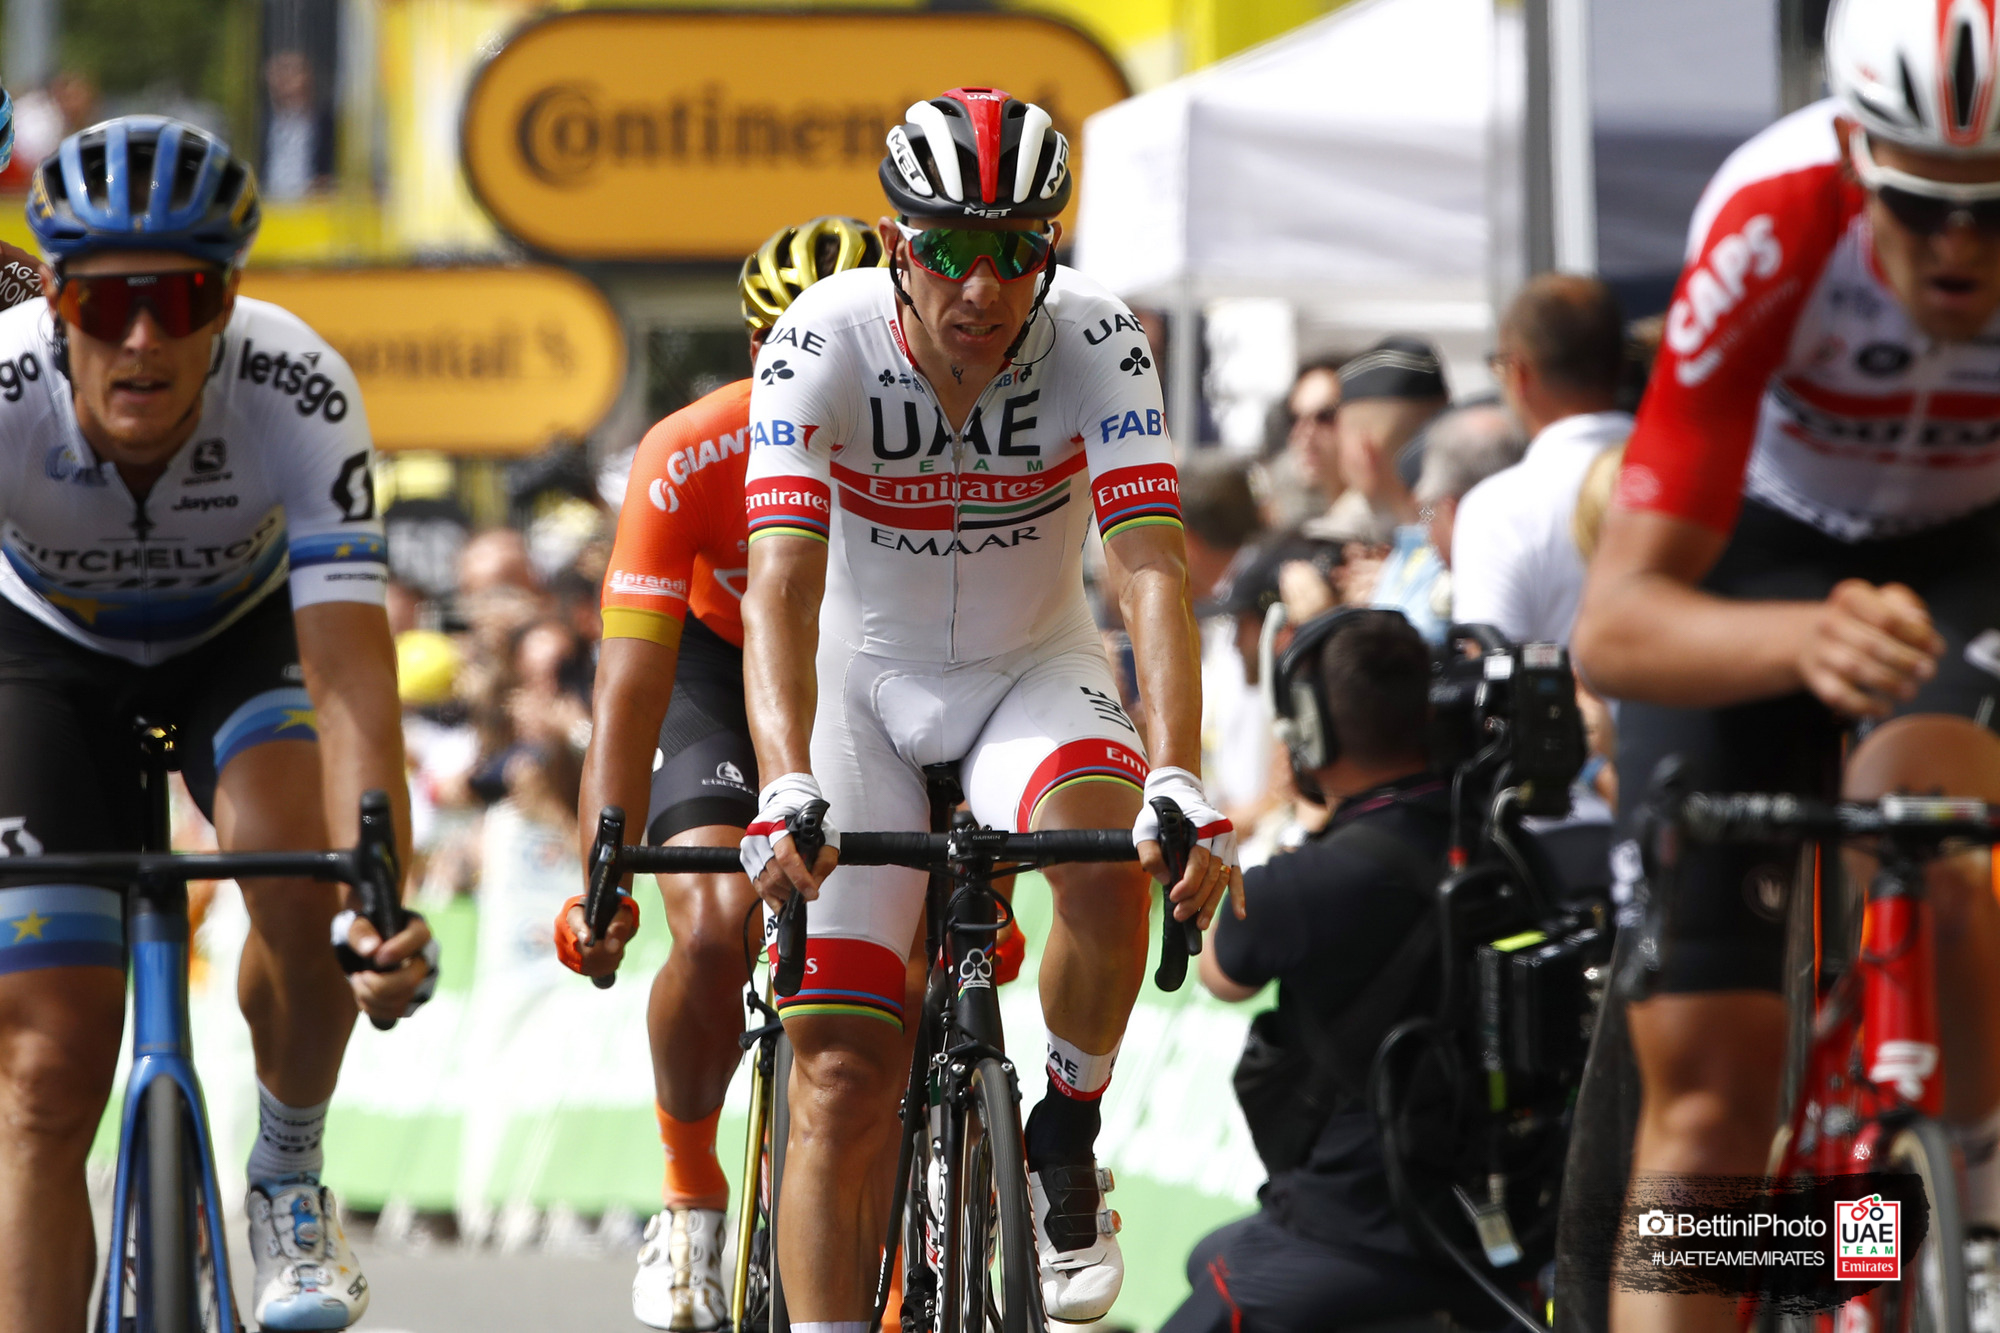 Rui Costa his first TOP 10 finish at the 2019 Tour de France for UAE Team Emirates - UAE team Emirates